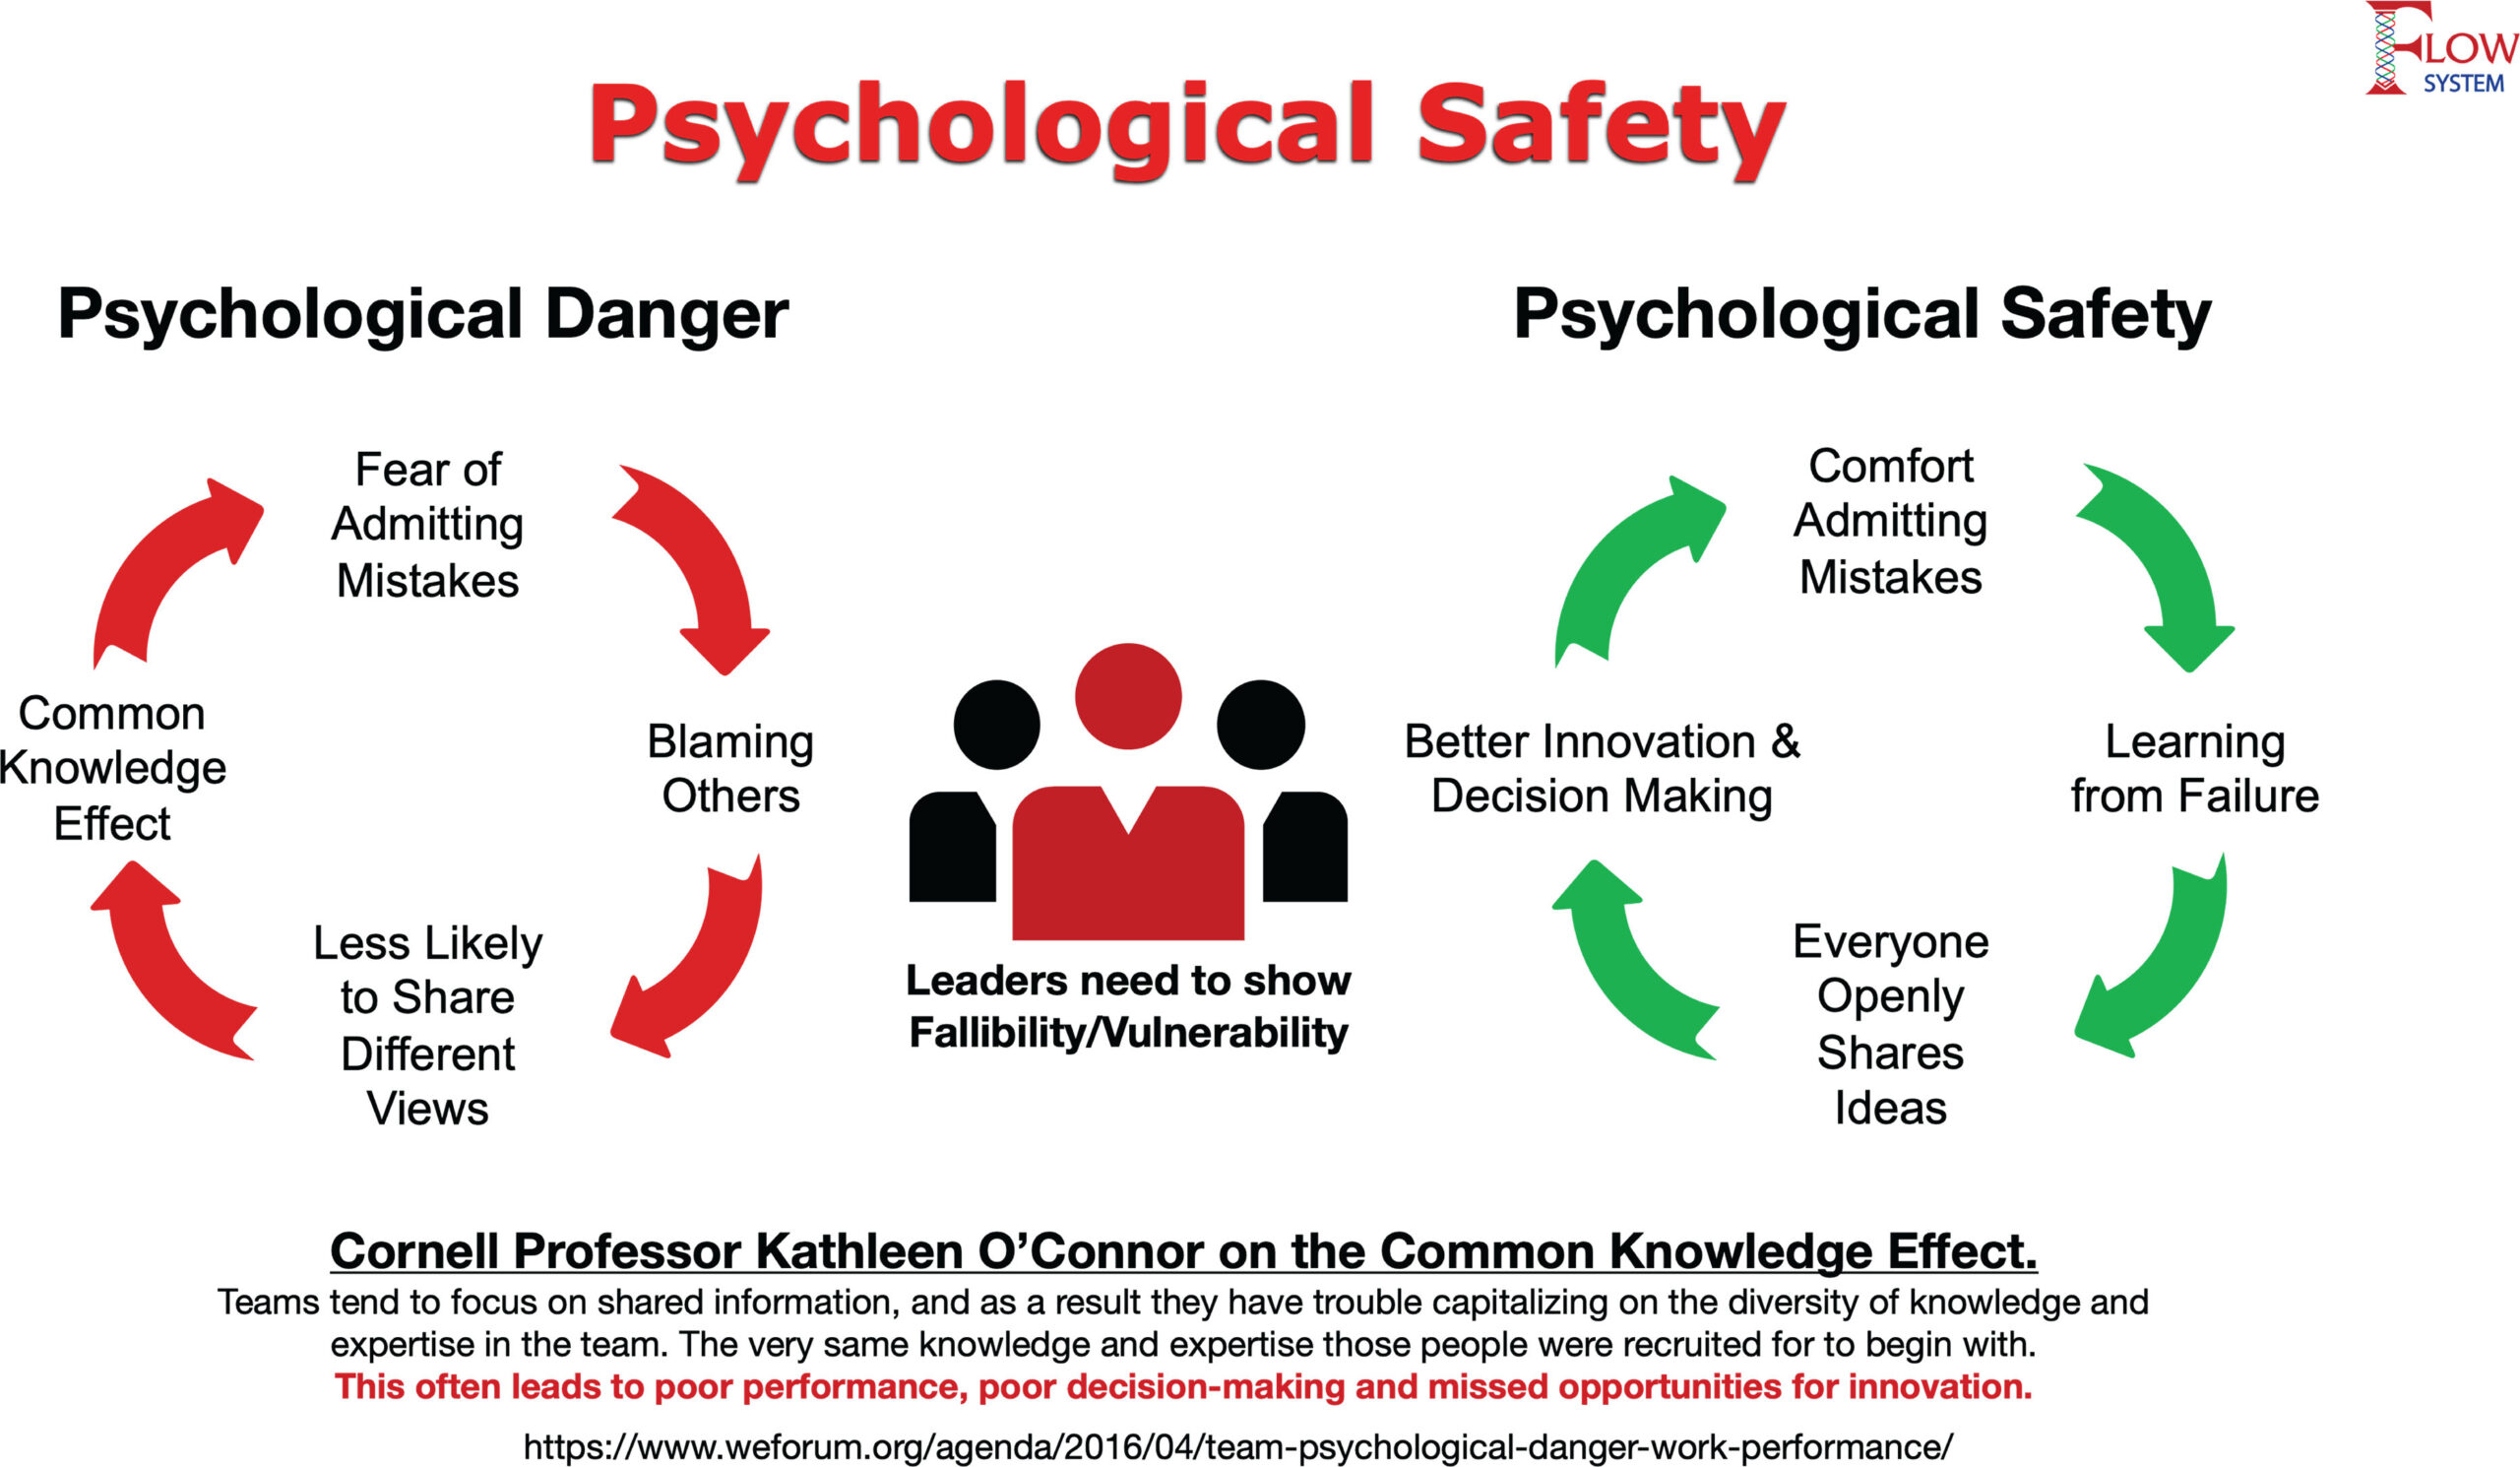 Figure showing psychological danger and psychological safety